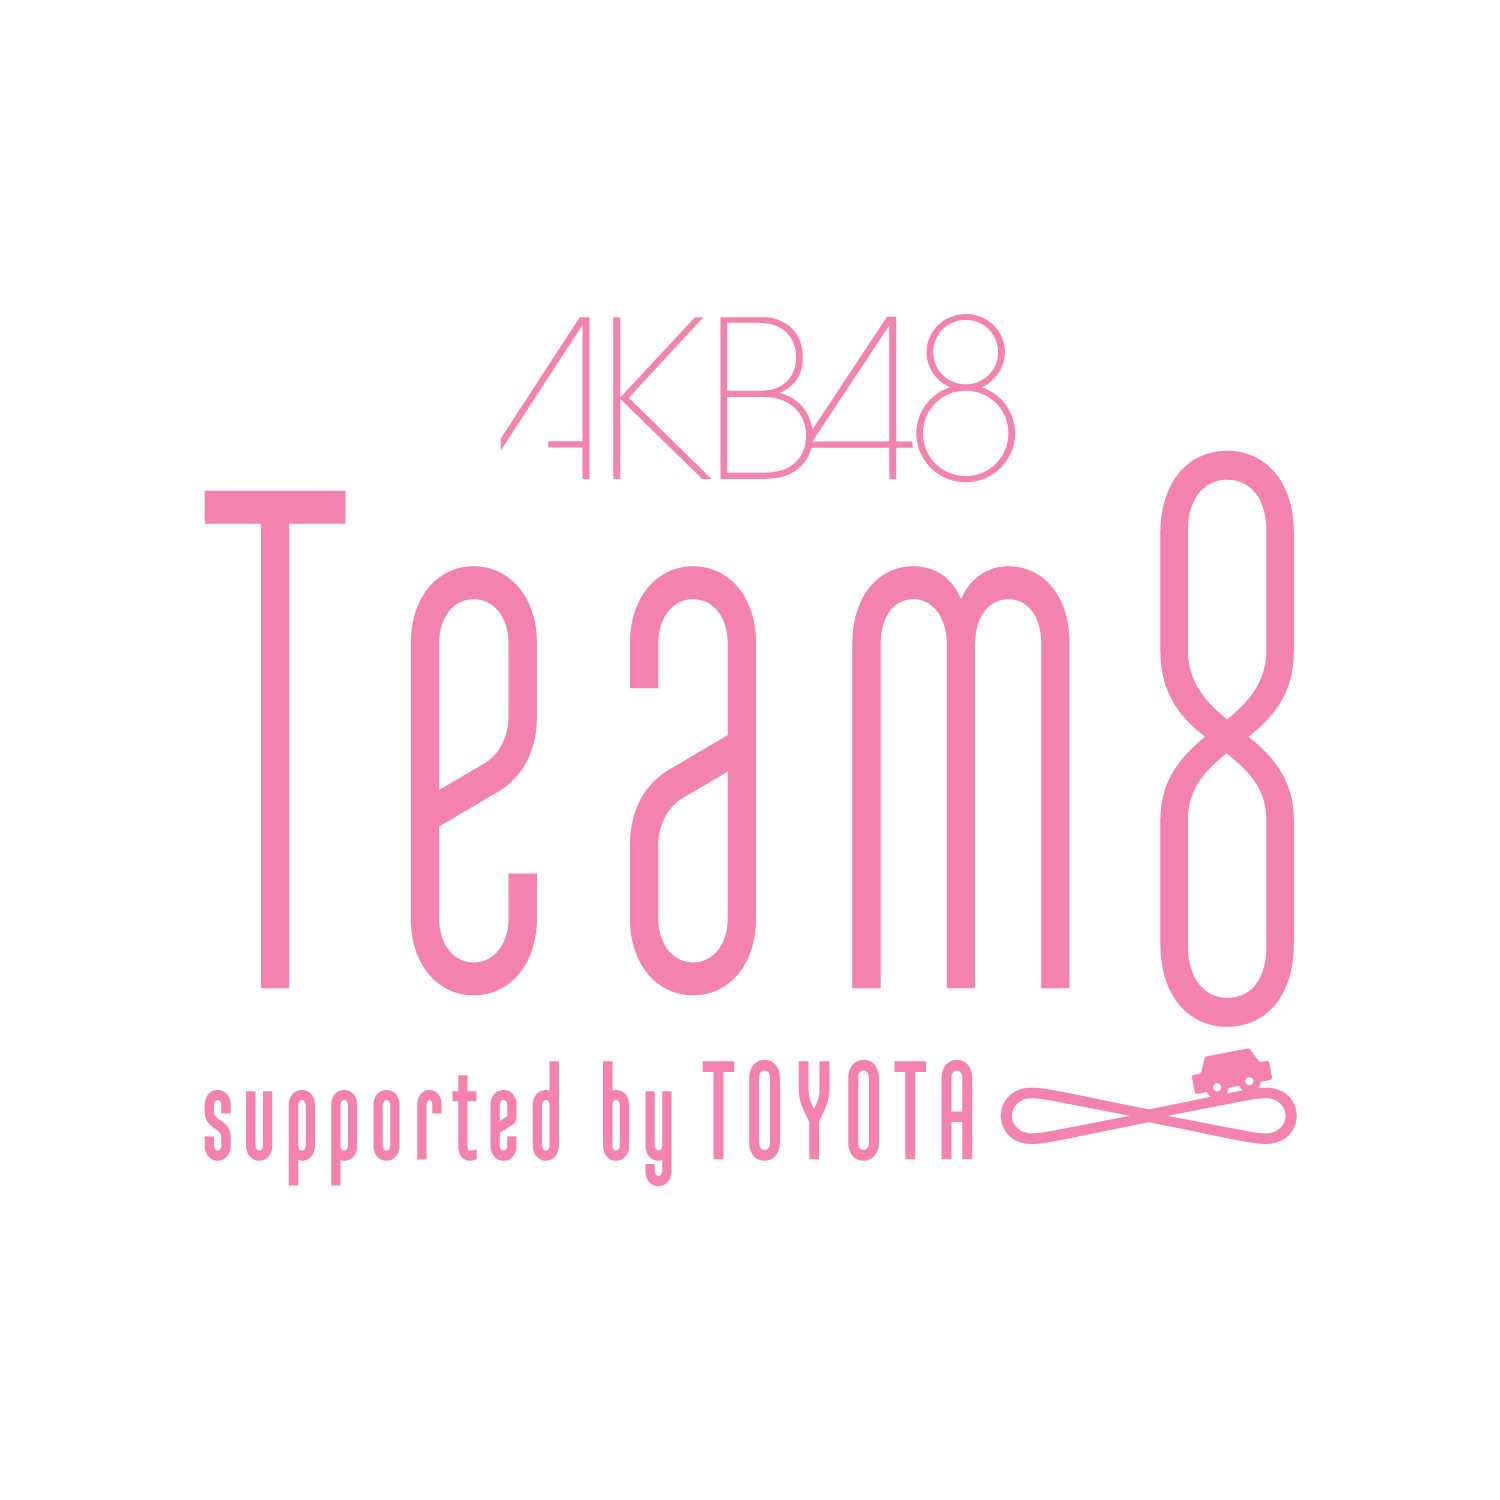 Akb48 チーム8 のメンバーは可愛い 美人が多い 顔ランキングtop10 18年版 アイドルエブリーどっとこむ